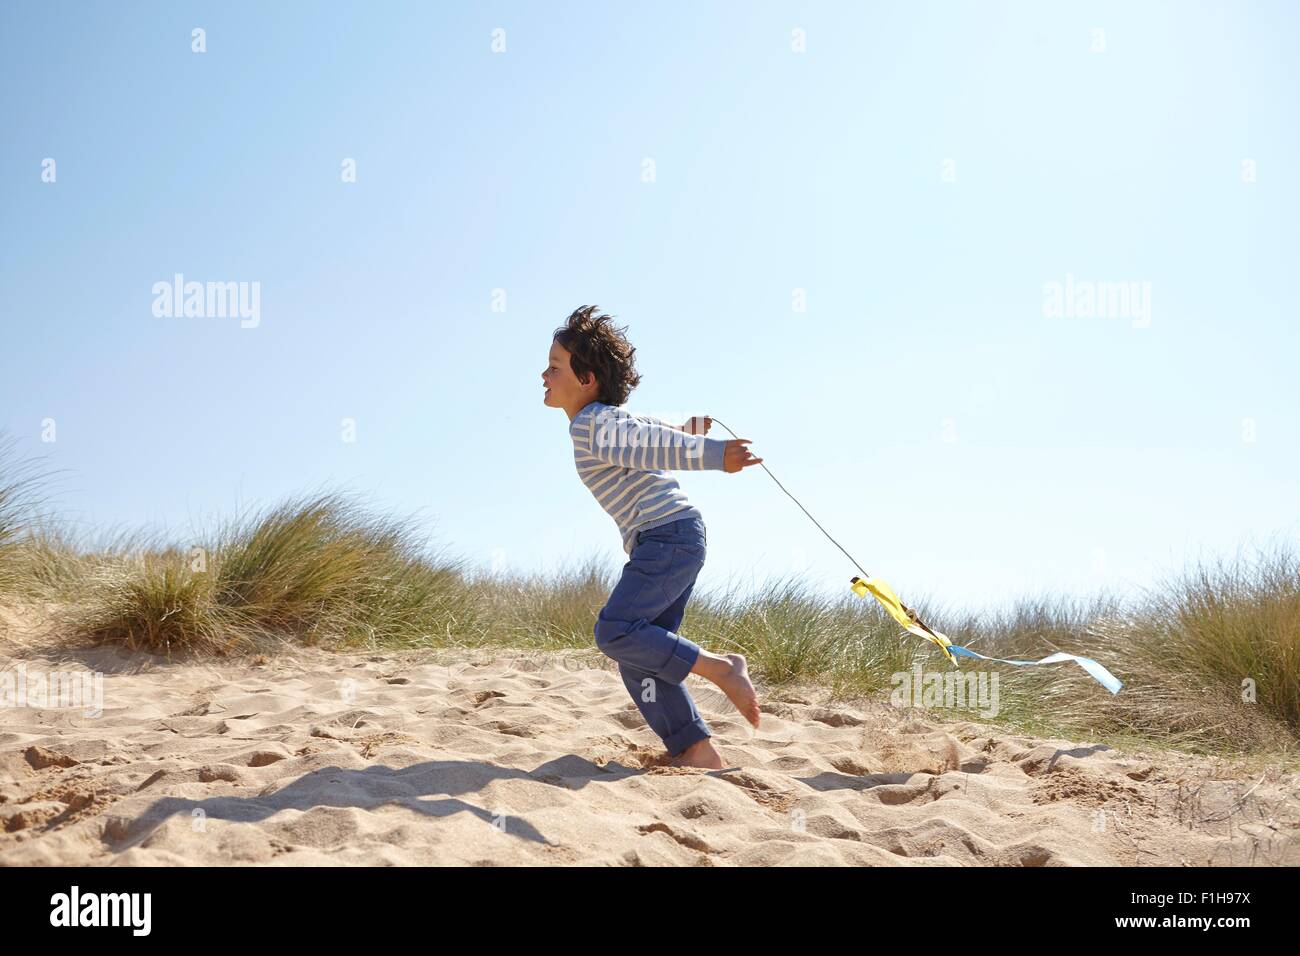 Jeune garçon flying kite on beach Banque D'Images